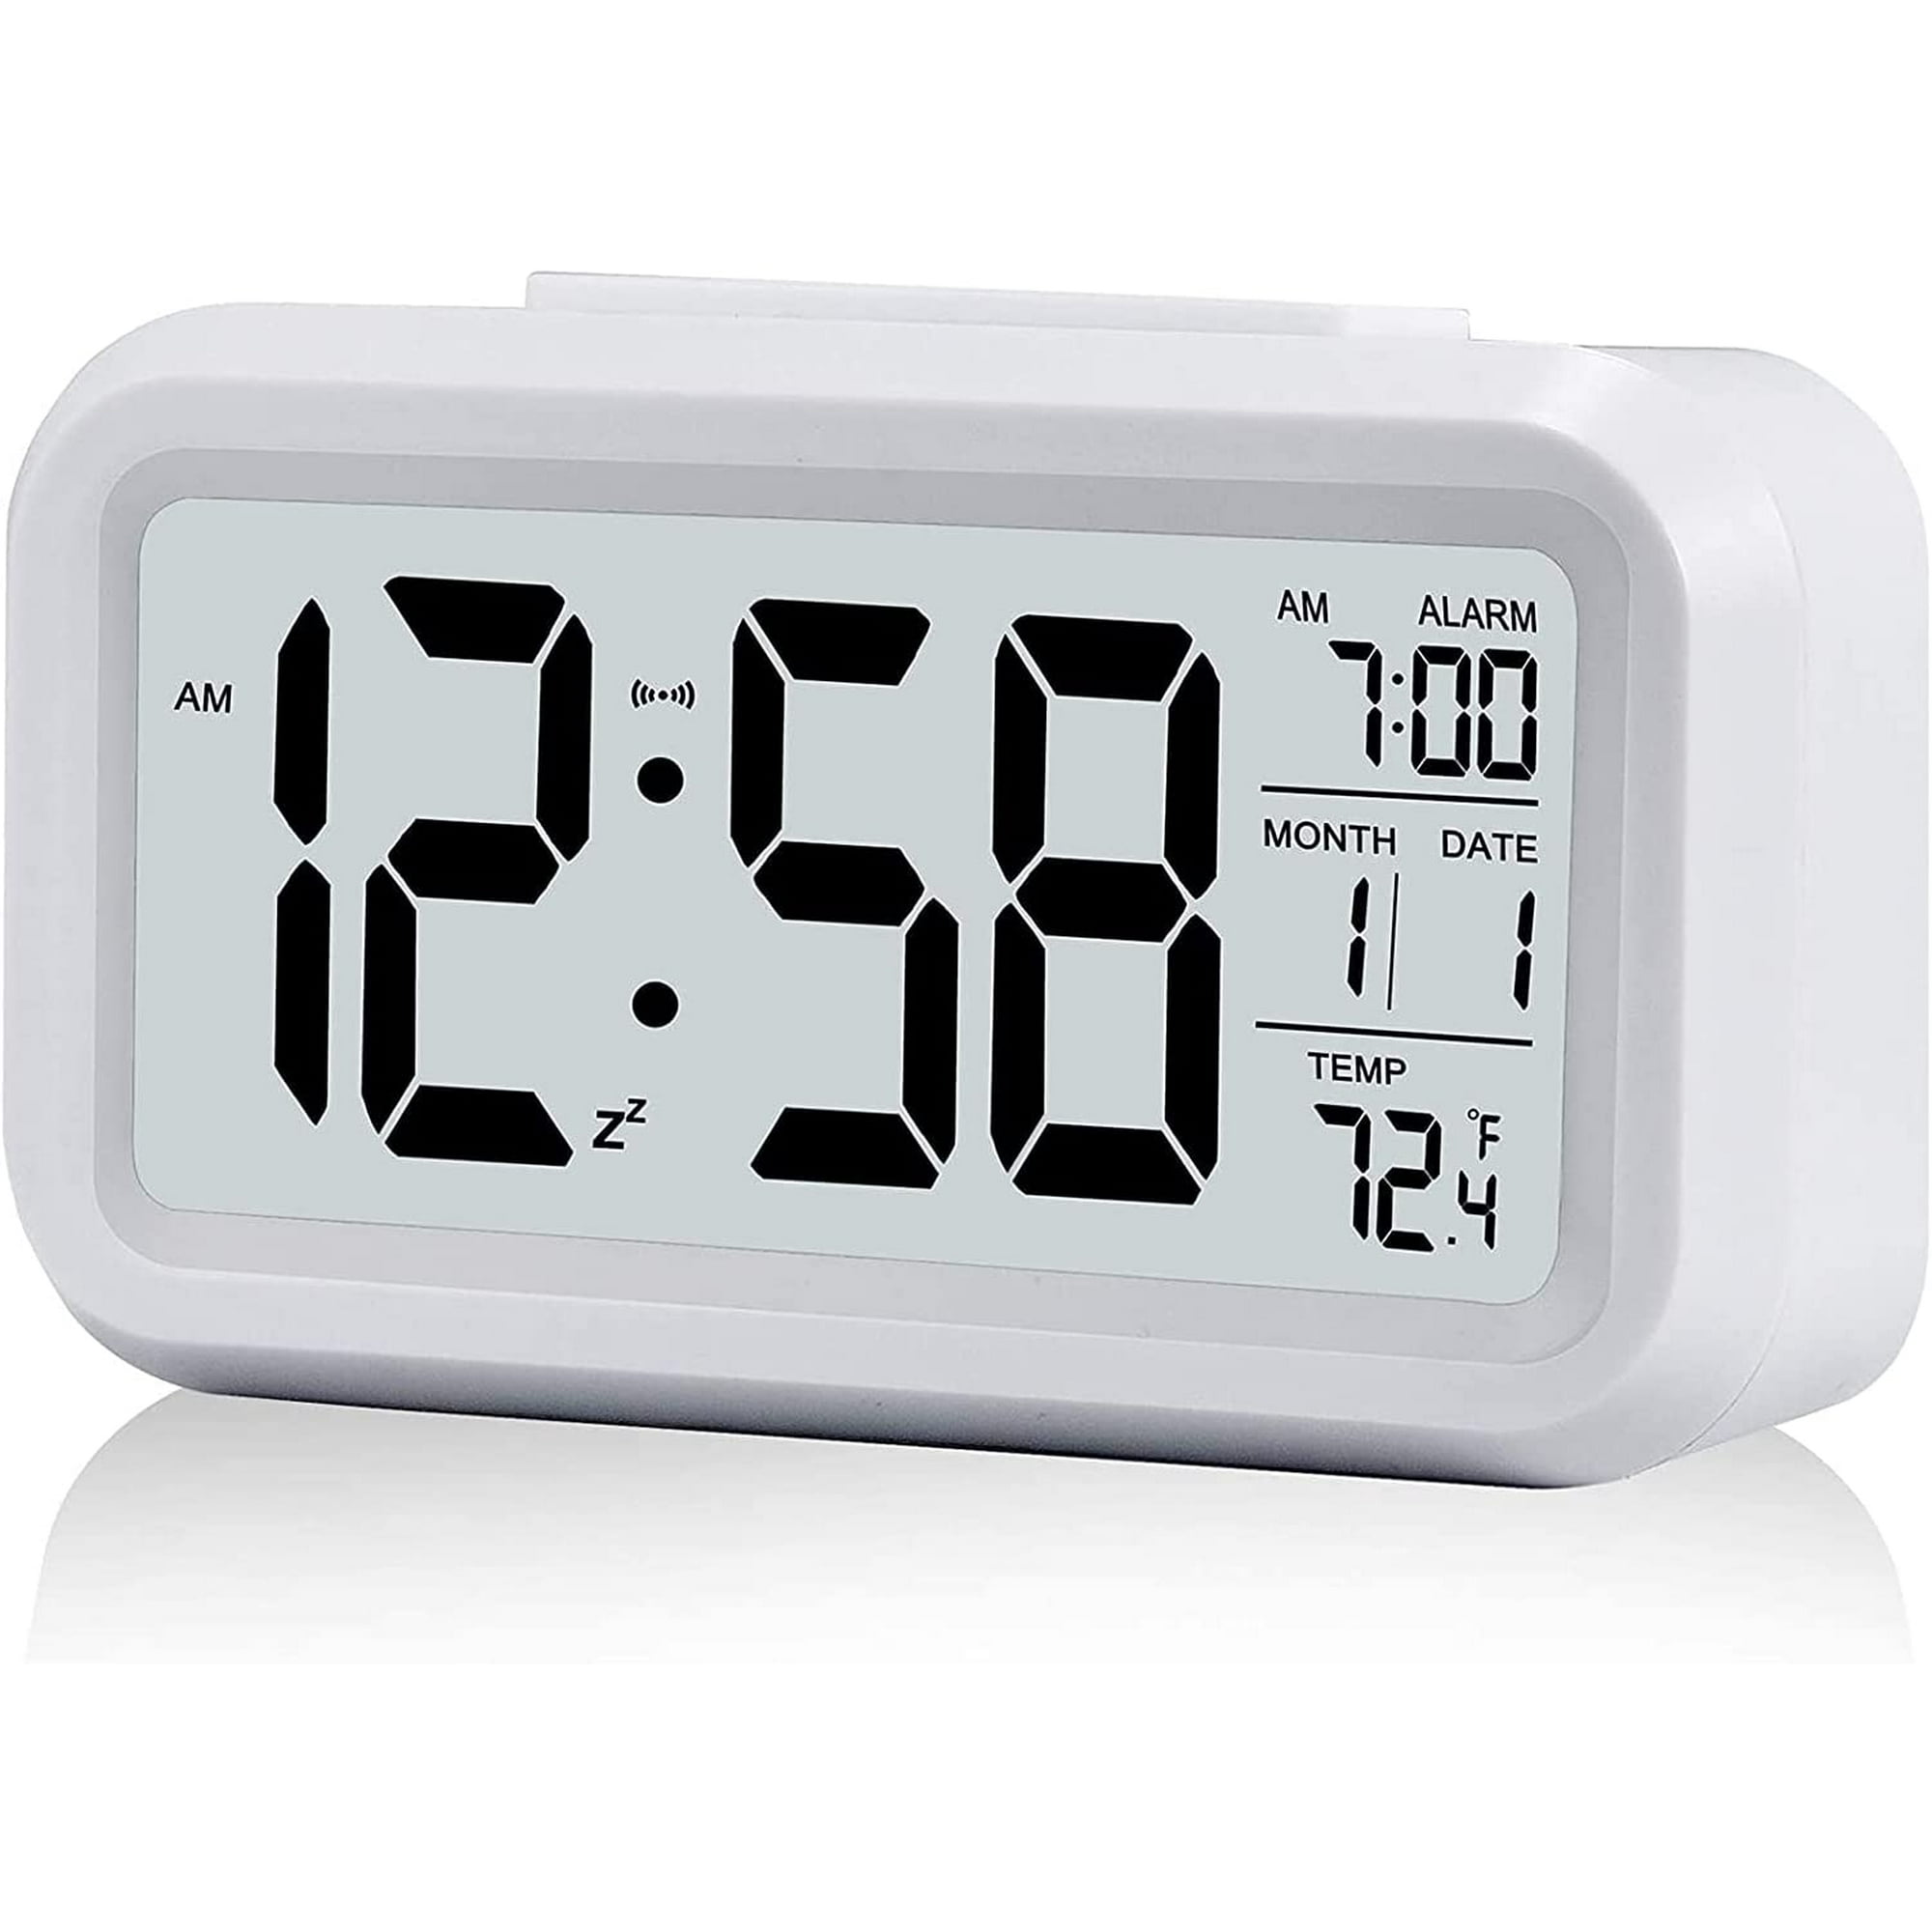  Pilipane Reloj despertador digital inteligente LCD, funciona  con pilas, reloj electrónico pequeño con temperatura interior, reloj  despertador de escritorio, sensor de sonido,  hora/calendario/semana/temperatura, repetición (negro) : Hogar y